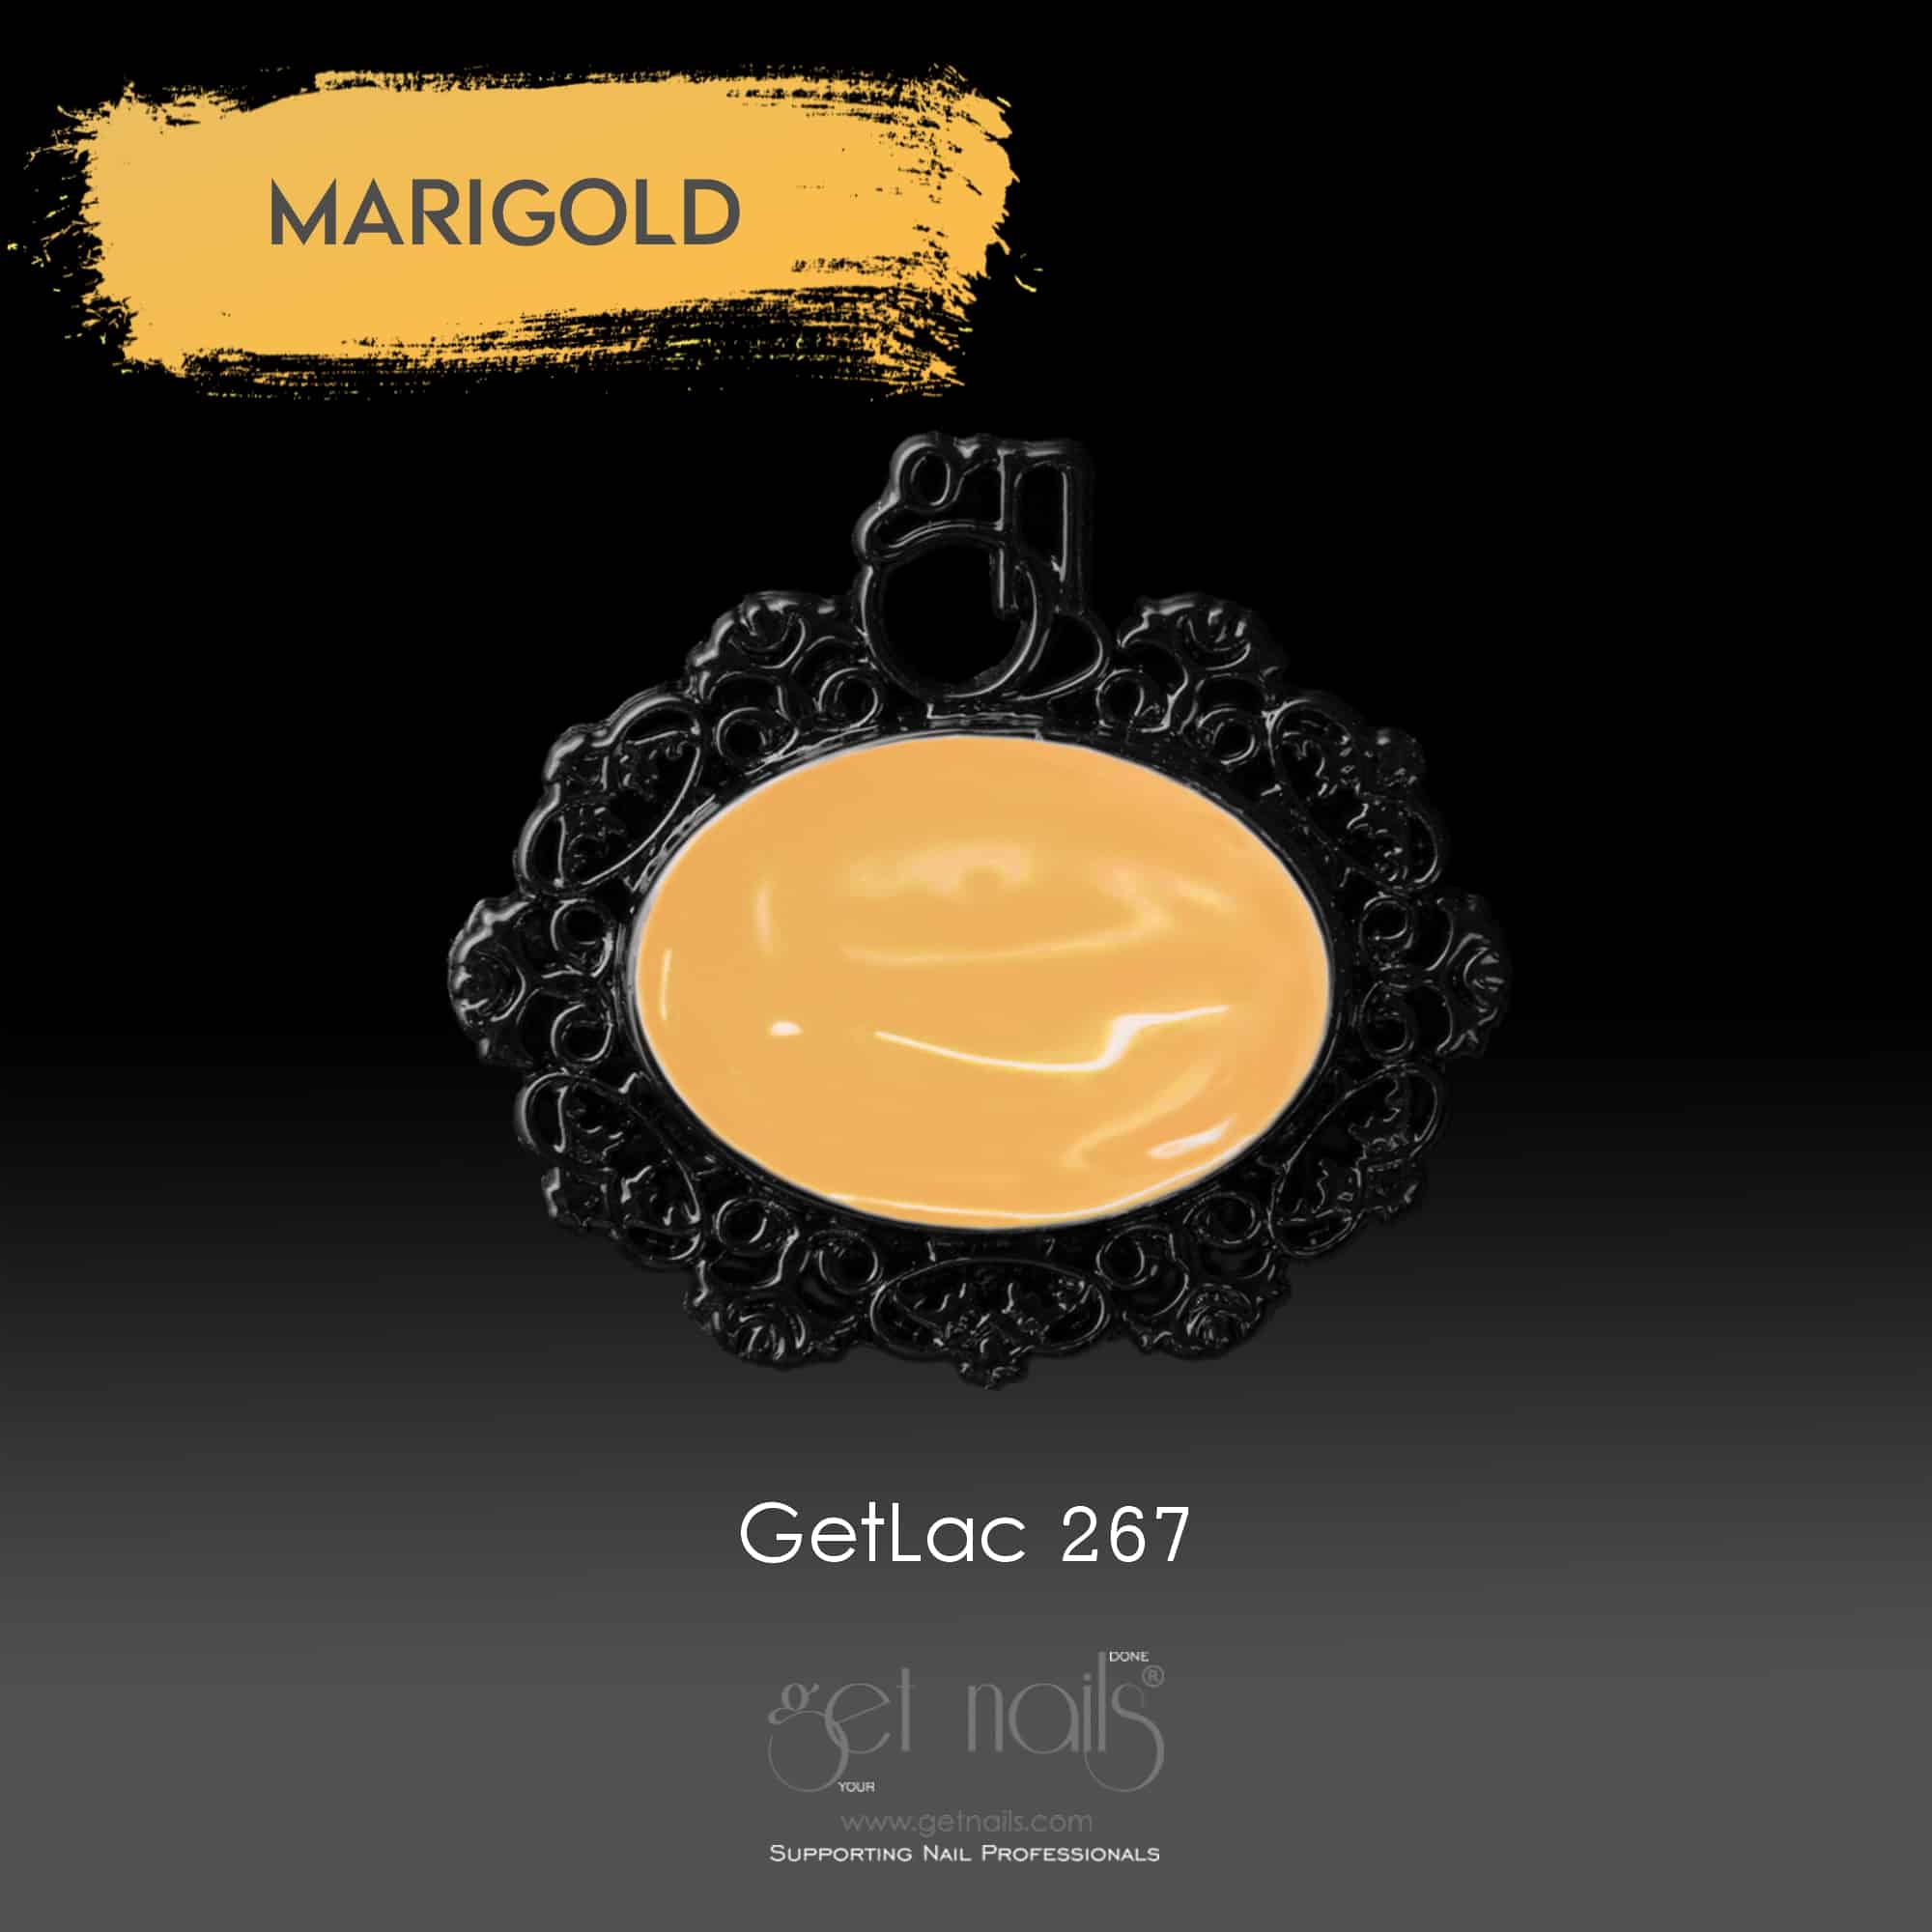 Get Nails Austria - GetLac 267 15g Marigold